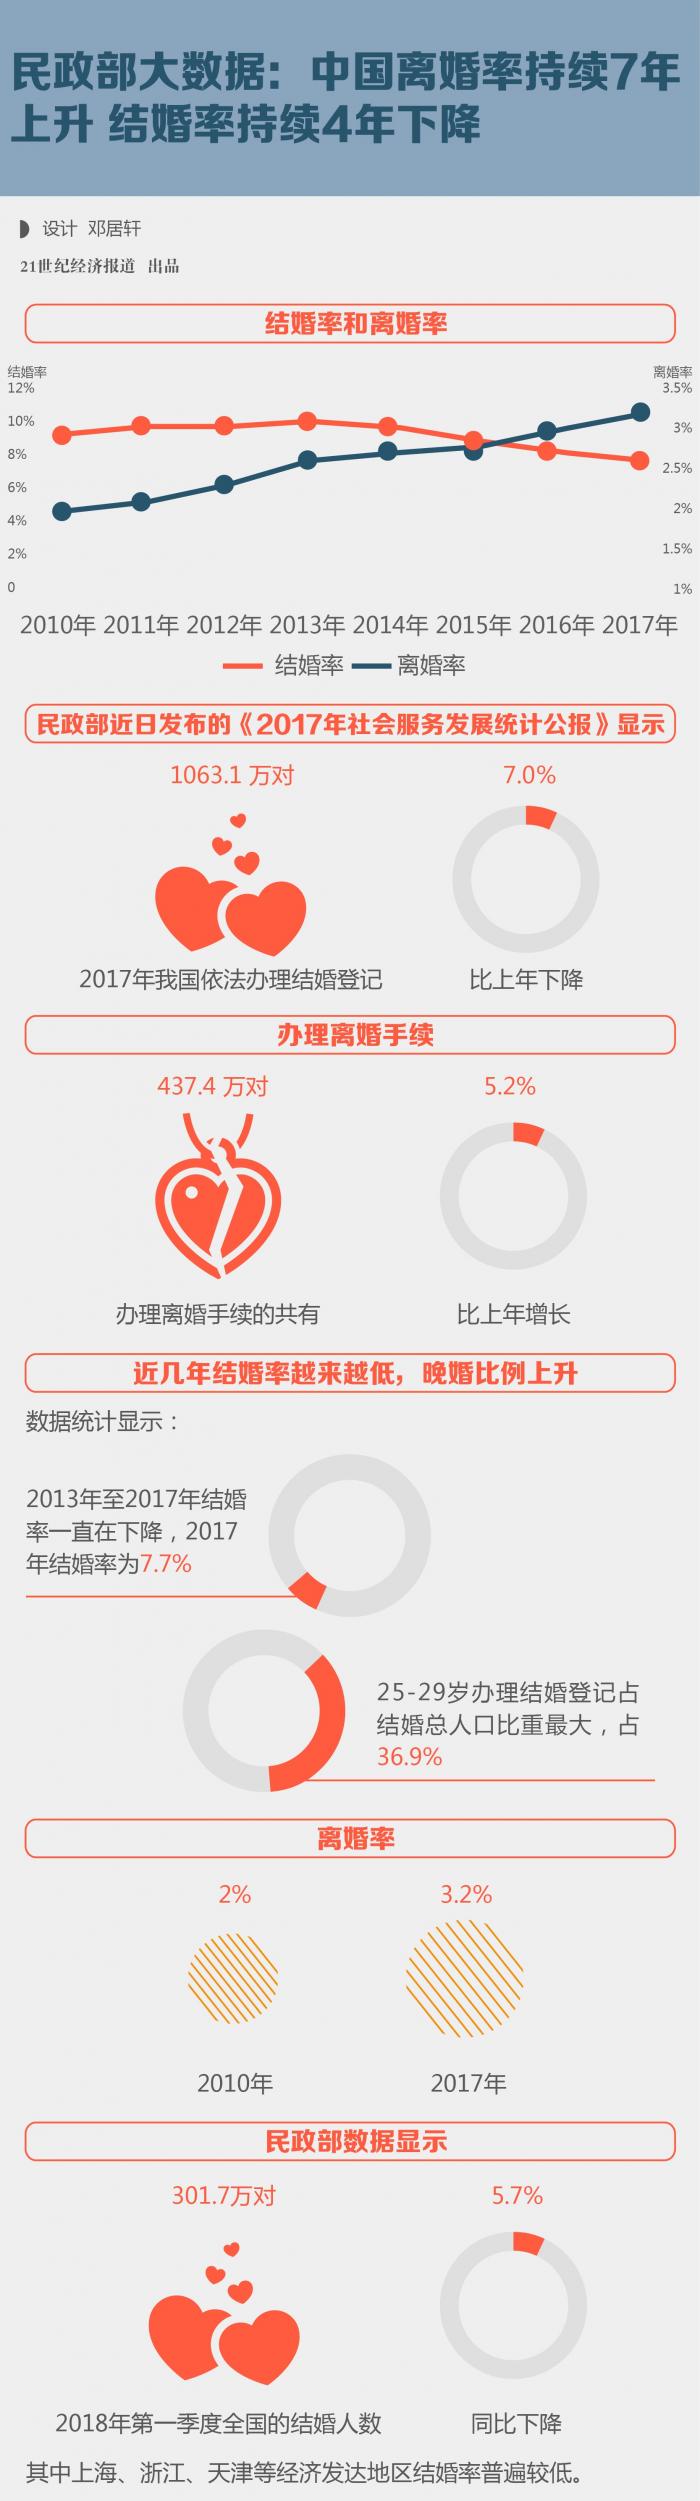 民政部大数据 中国离婚率持续7年上升结婚率持续4年下降 21财经